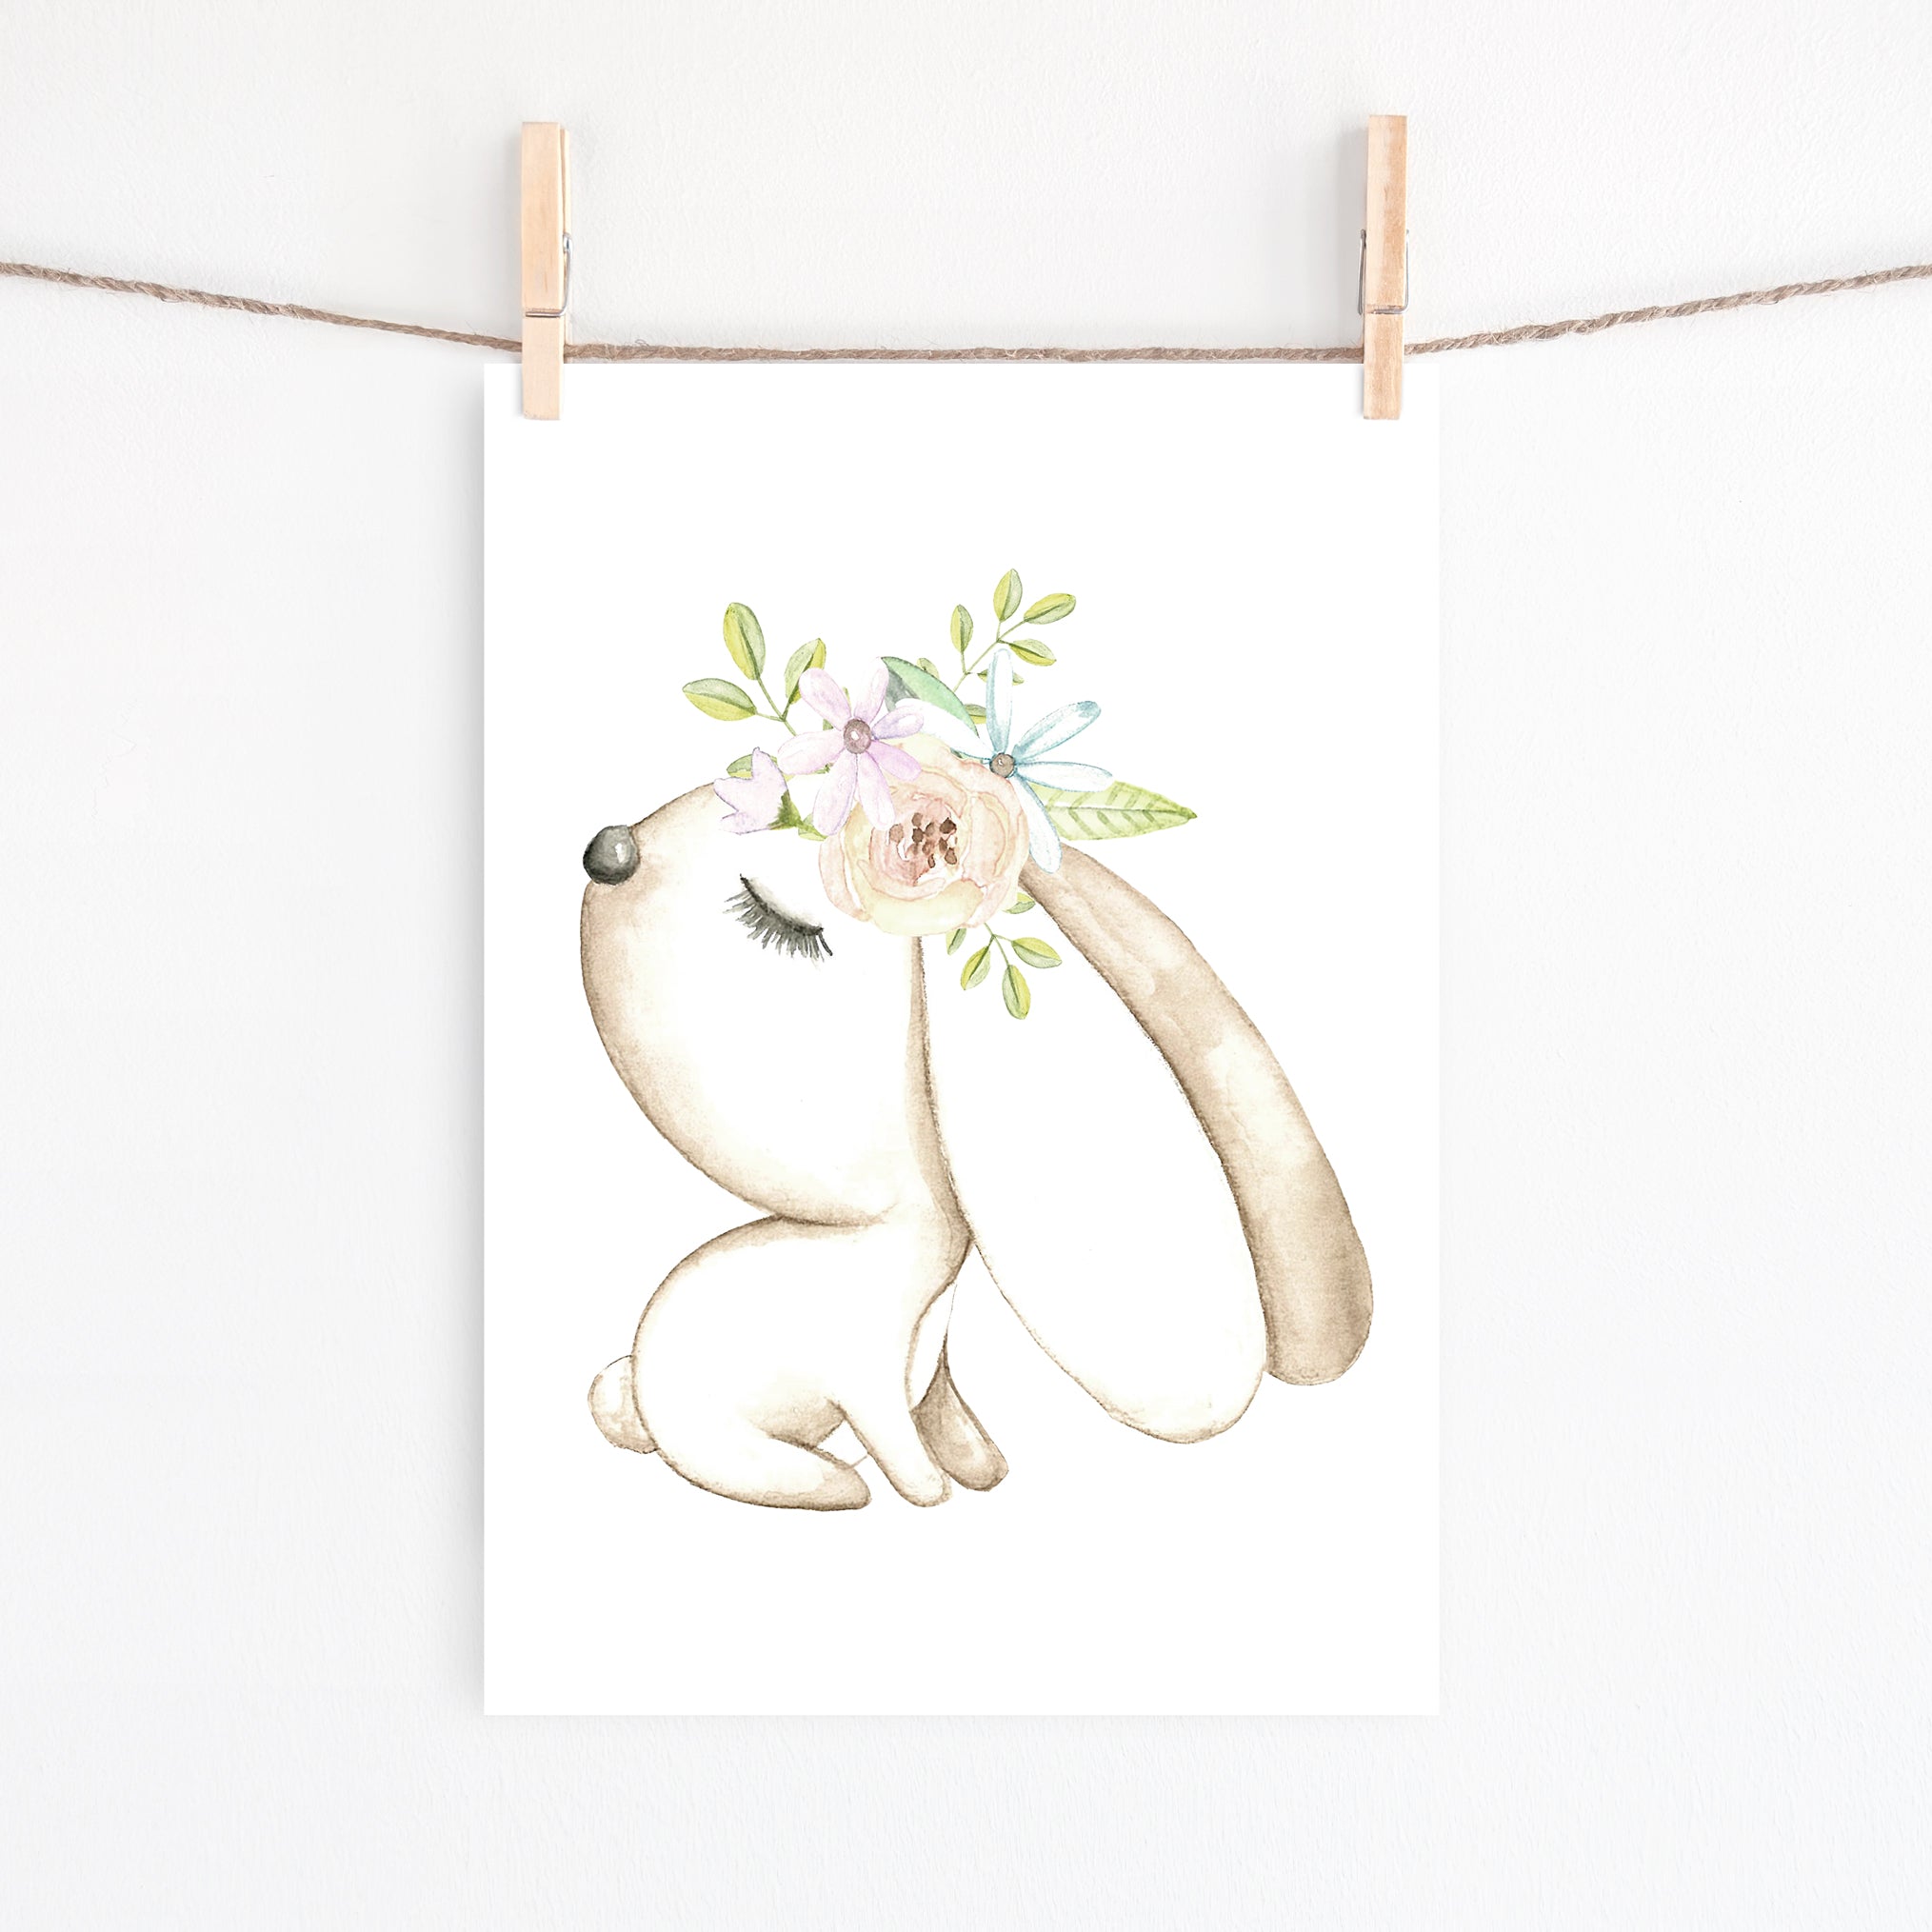 Woodland Deer, Bunny & Teepee Prints